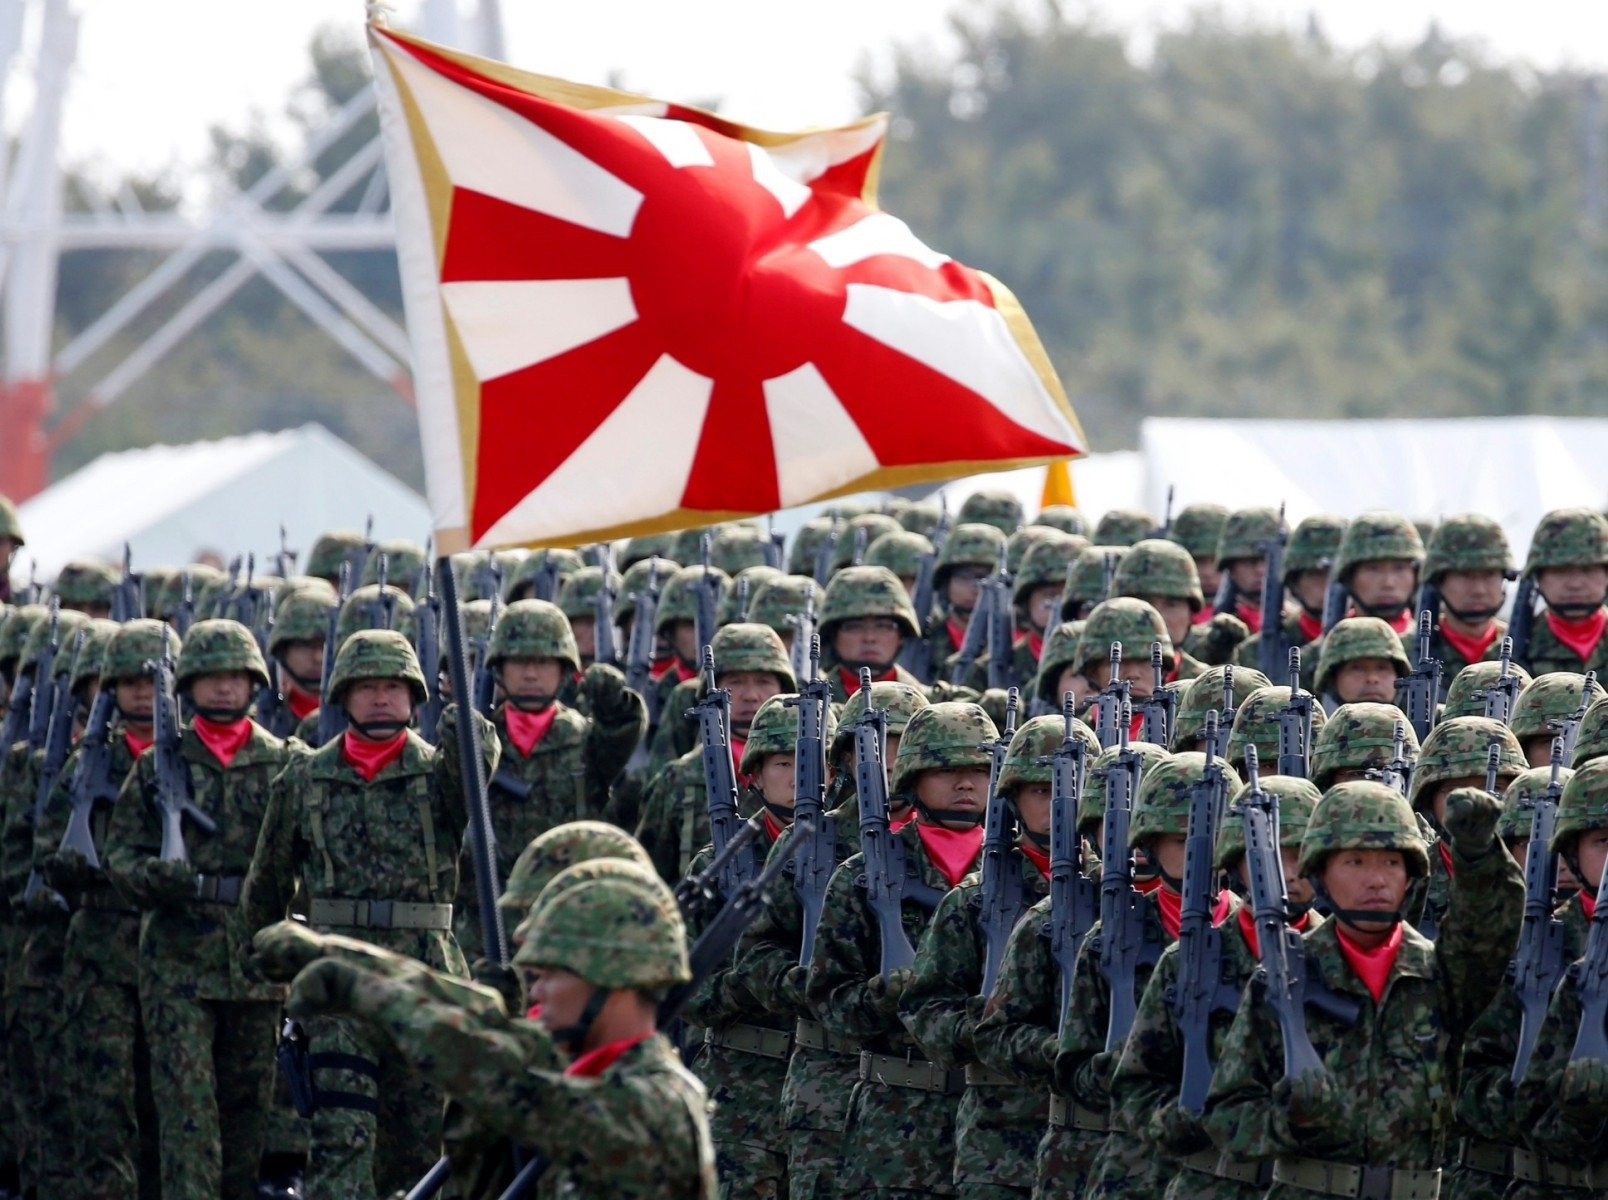 Triển vọng phát triển của quân đội Nhật Bản trong điều kiện mới (Phần đầu)